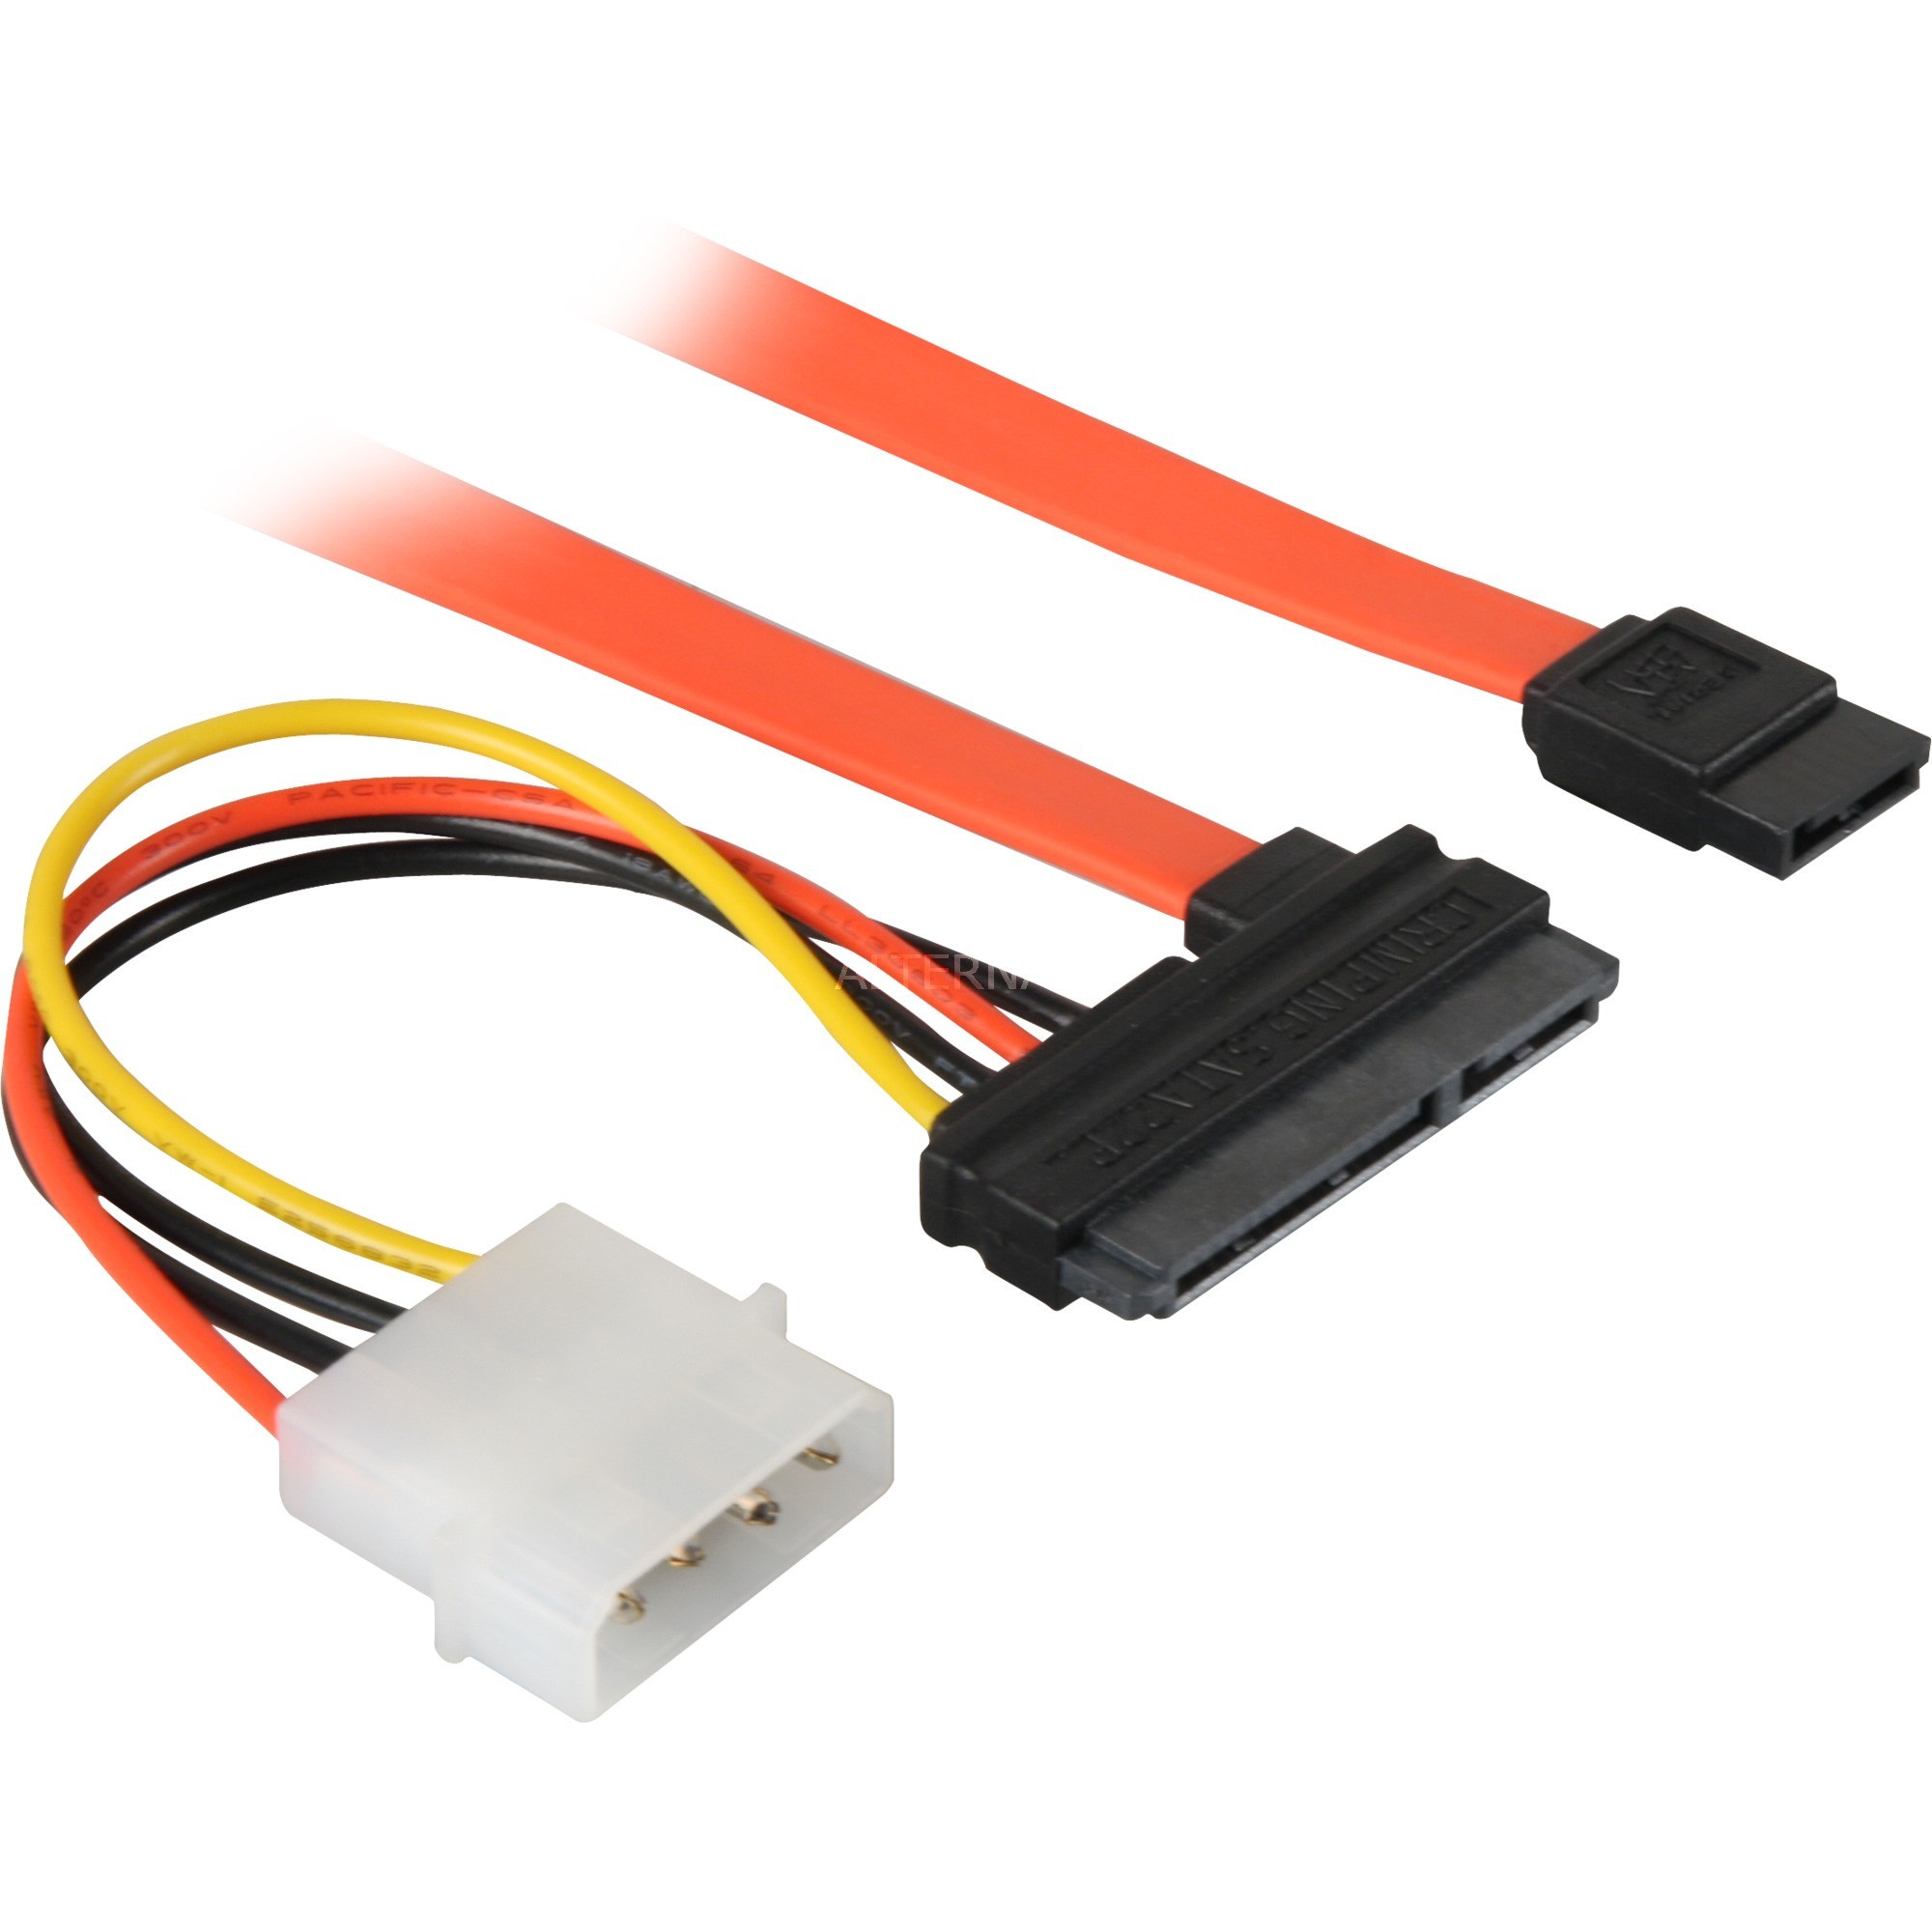 Image of Alternate - Adapterkabel S-ATA 2in1 Datensignal + Strom online einkaufen bei Alternate